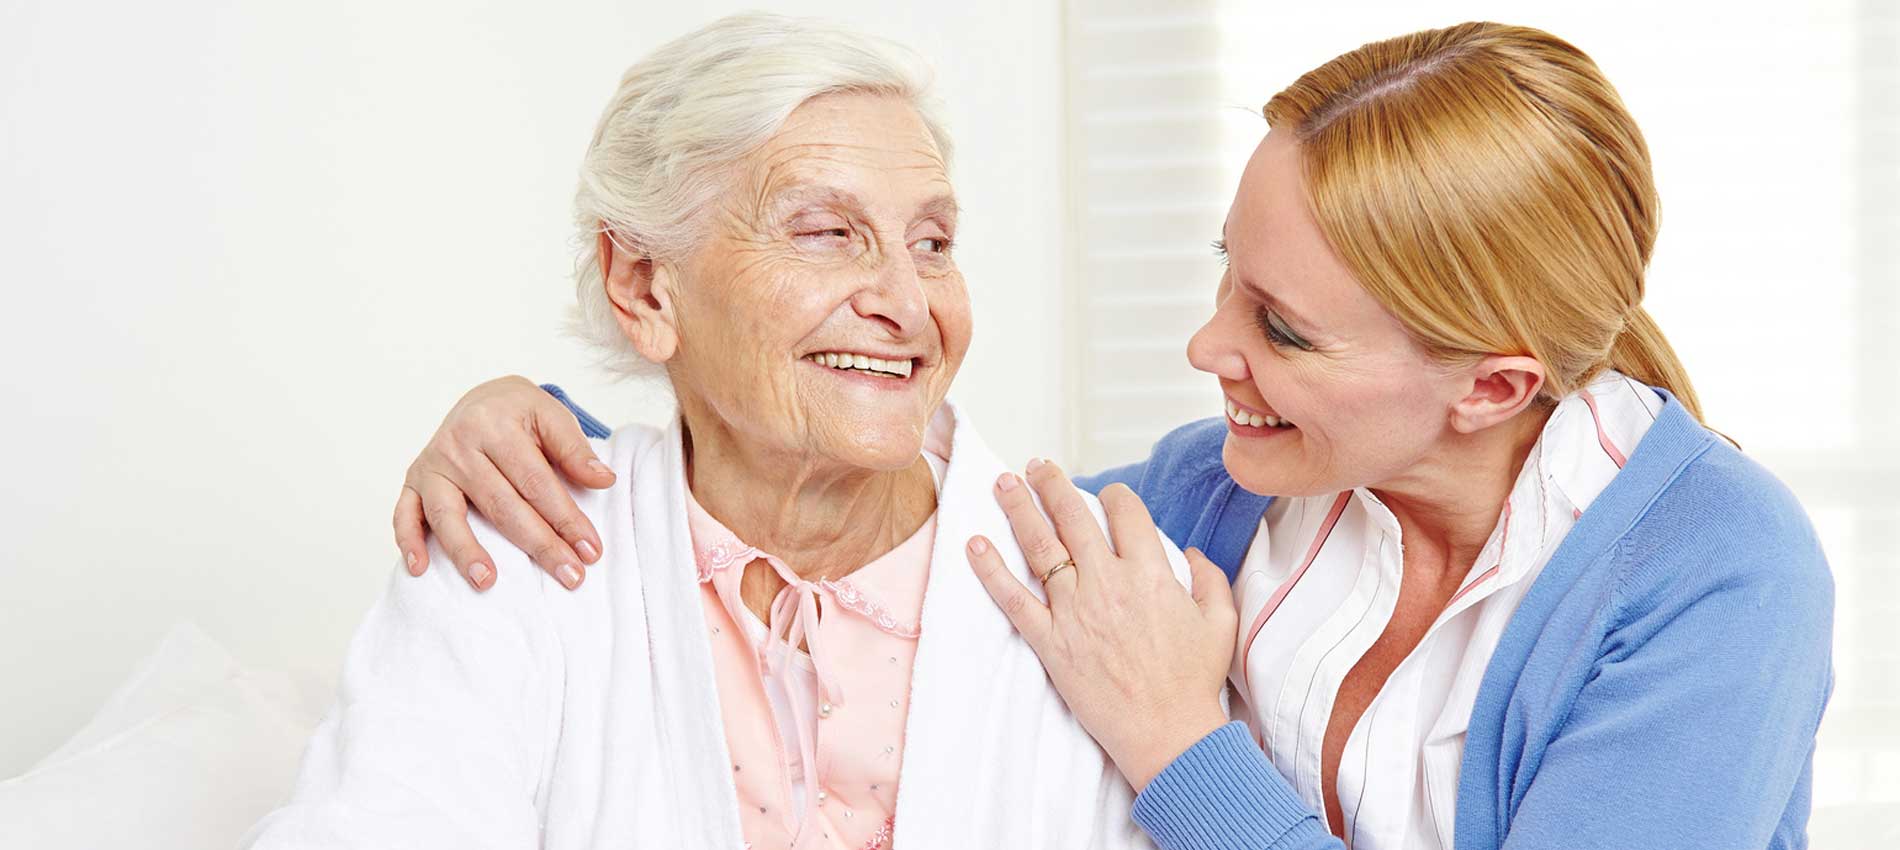 24h-Betreuung und Seniorenbetreuung zuhause | Betreuungslotse24 | Ihre 24h-Betreuung